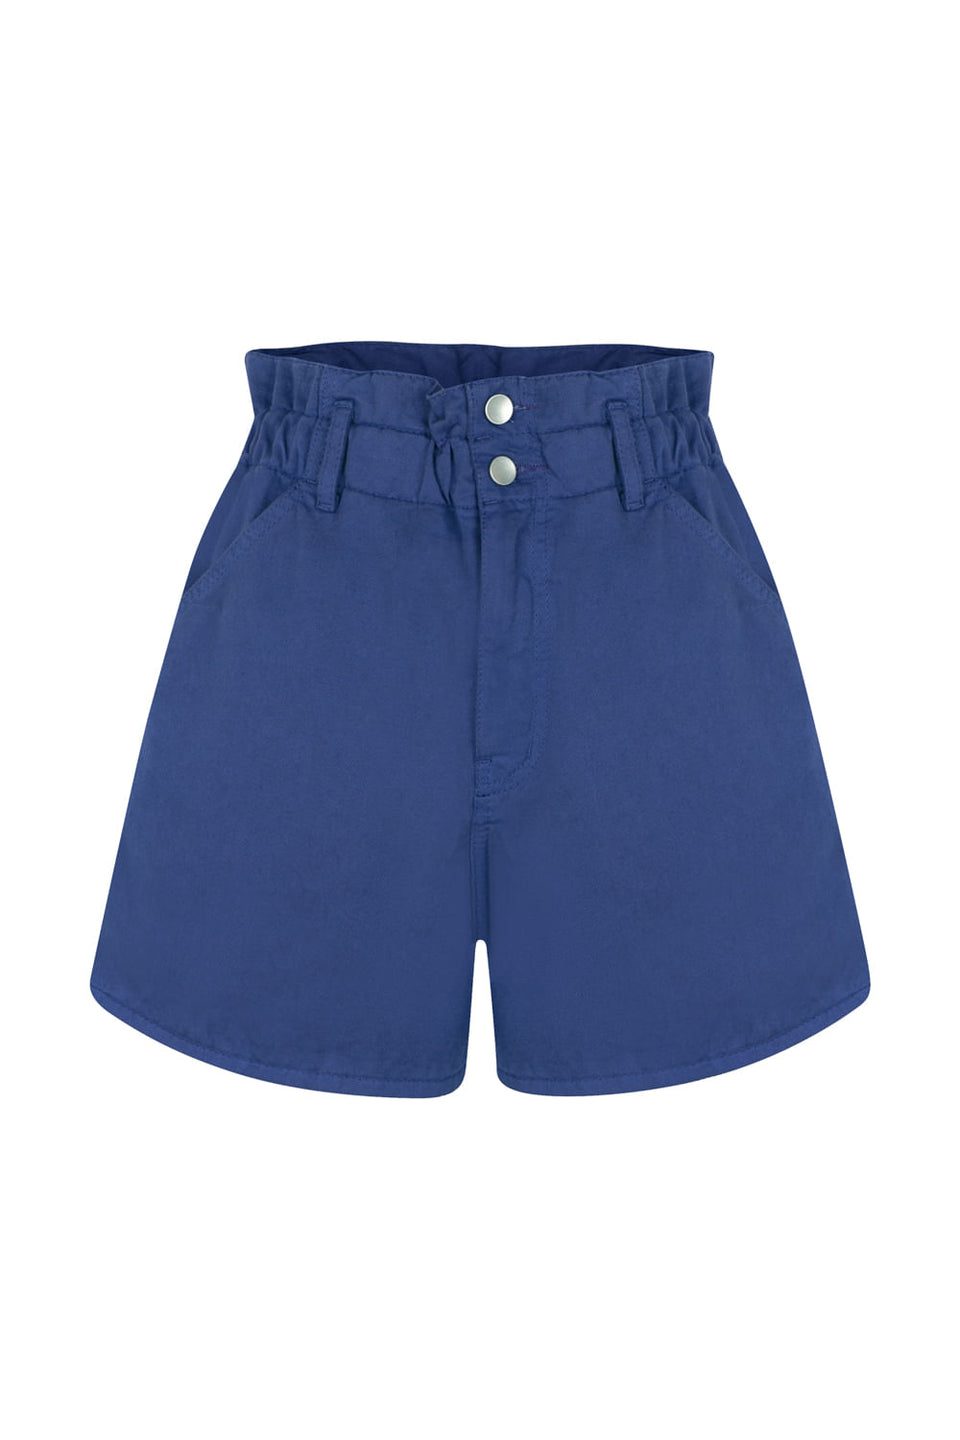 Shorts Elástico Onça Azul Marinho